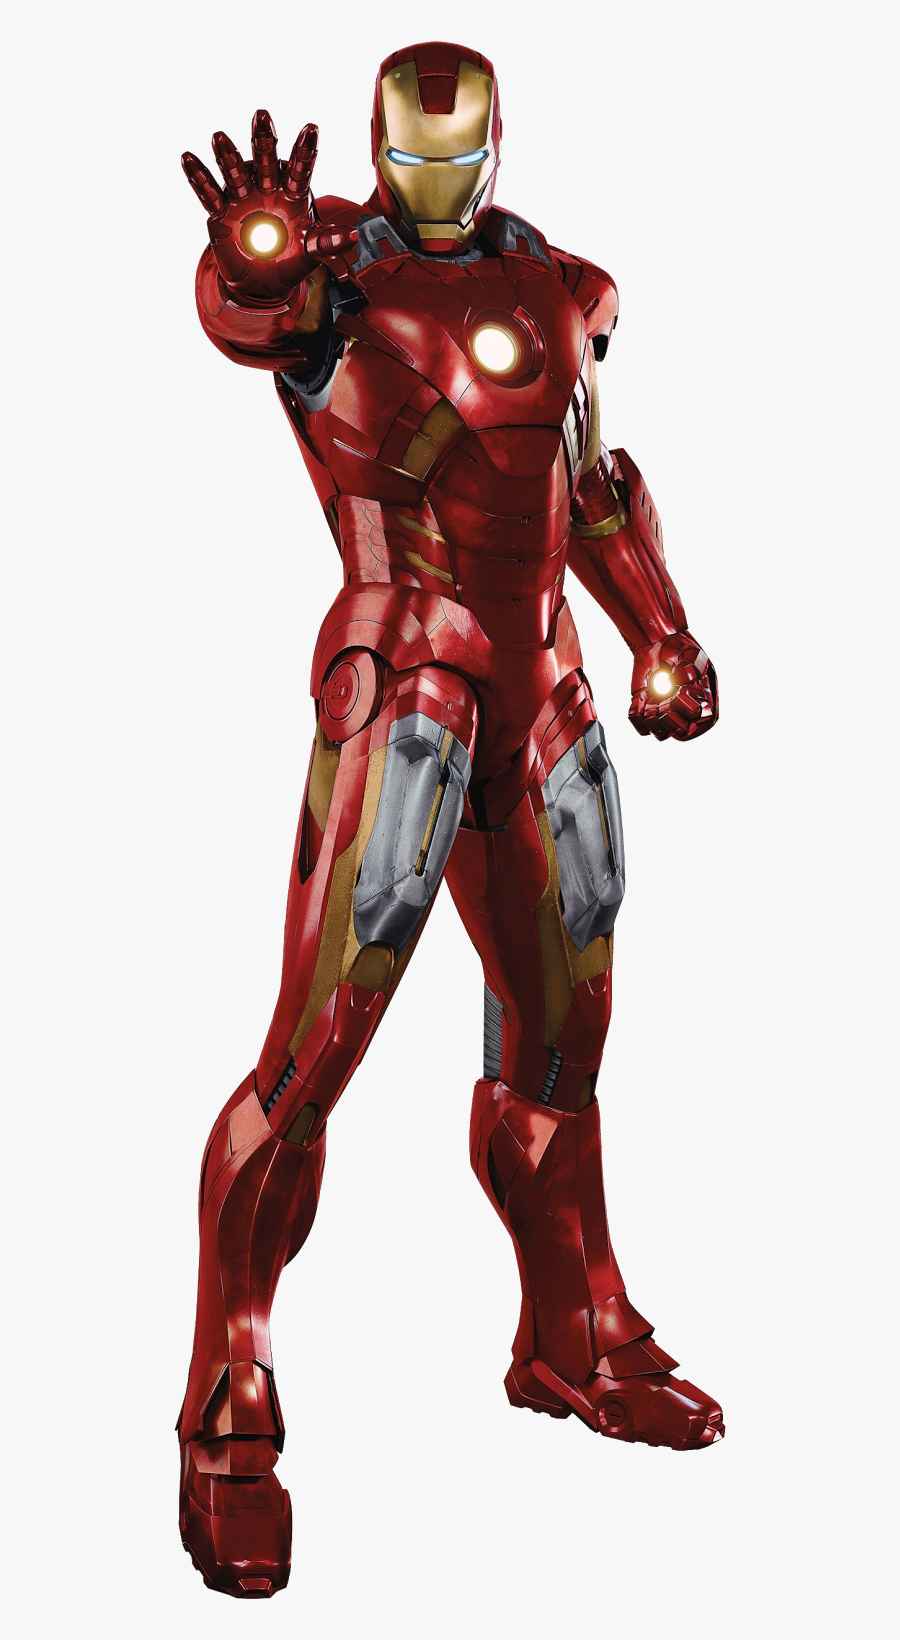 Image Png Iron Man - Iron Man Png Hd, Transparent Clipart